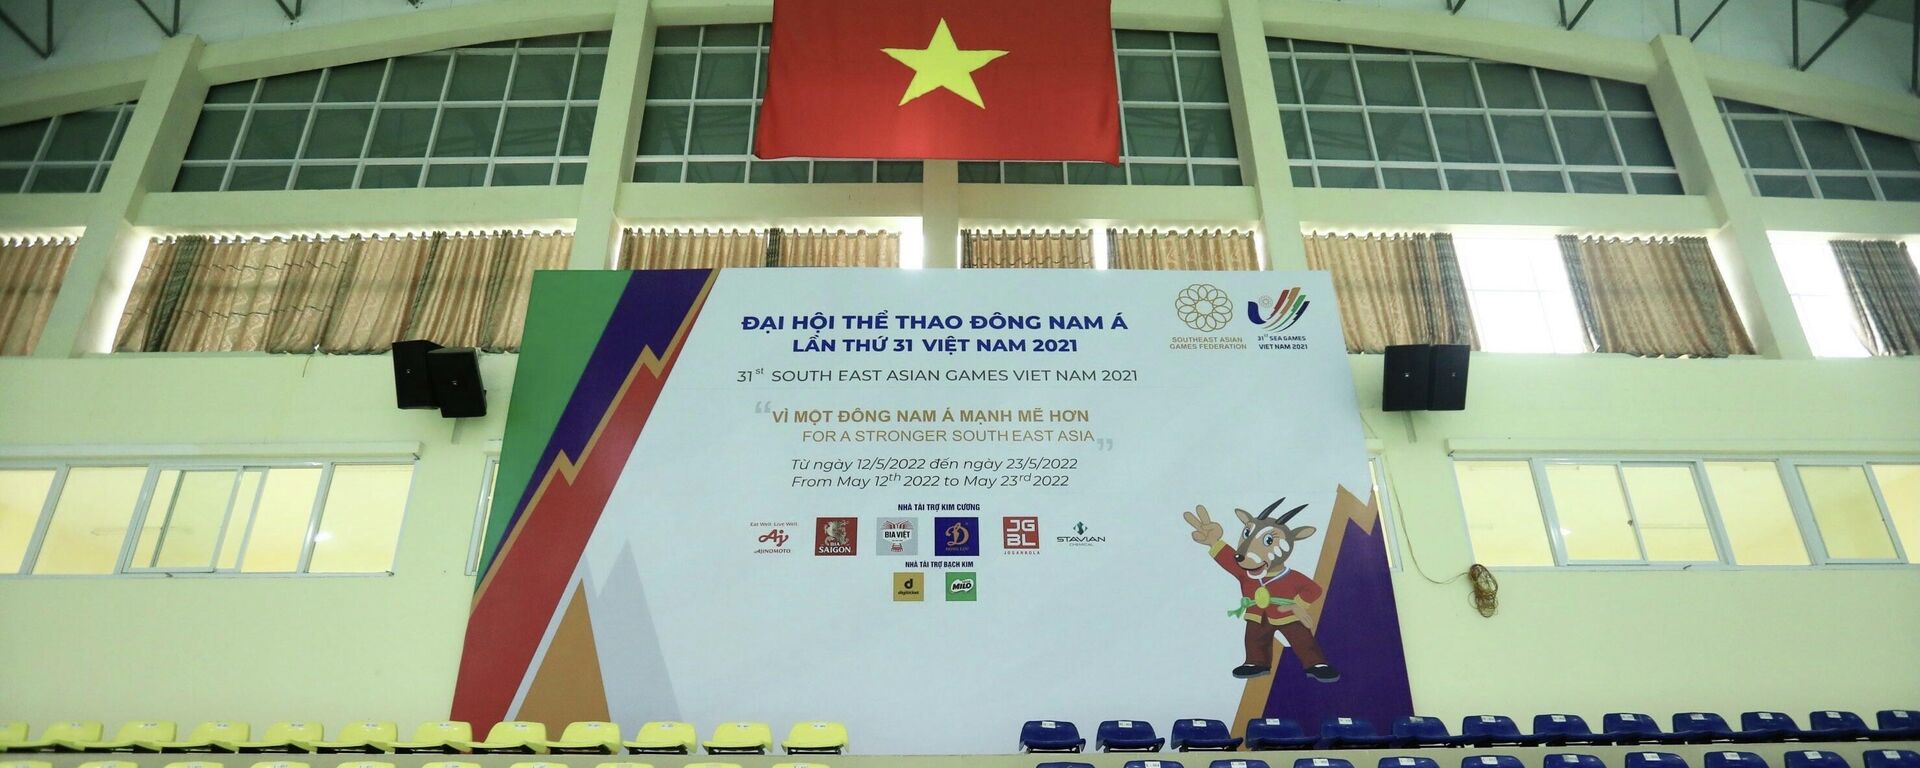 Nhà thi đấu Hoài Đức đã sẵn sàng đón 2.000 khán giả đến cổ vũ các nội dung thi đấu trong khuôn khổ SEA Games 31. - Sputnik Việt Nam, 1920, 21.03.2022